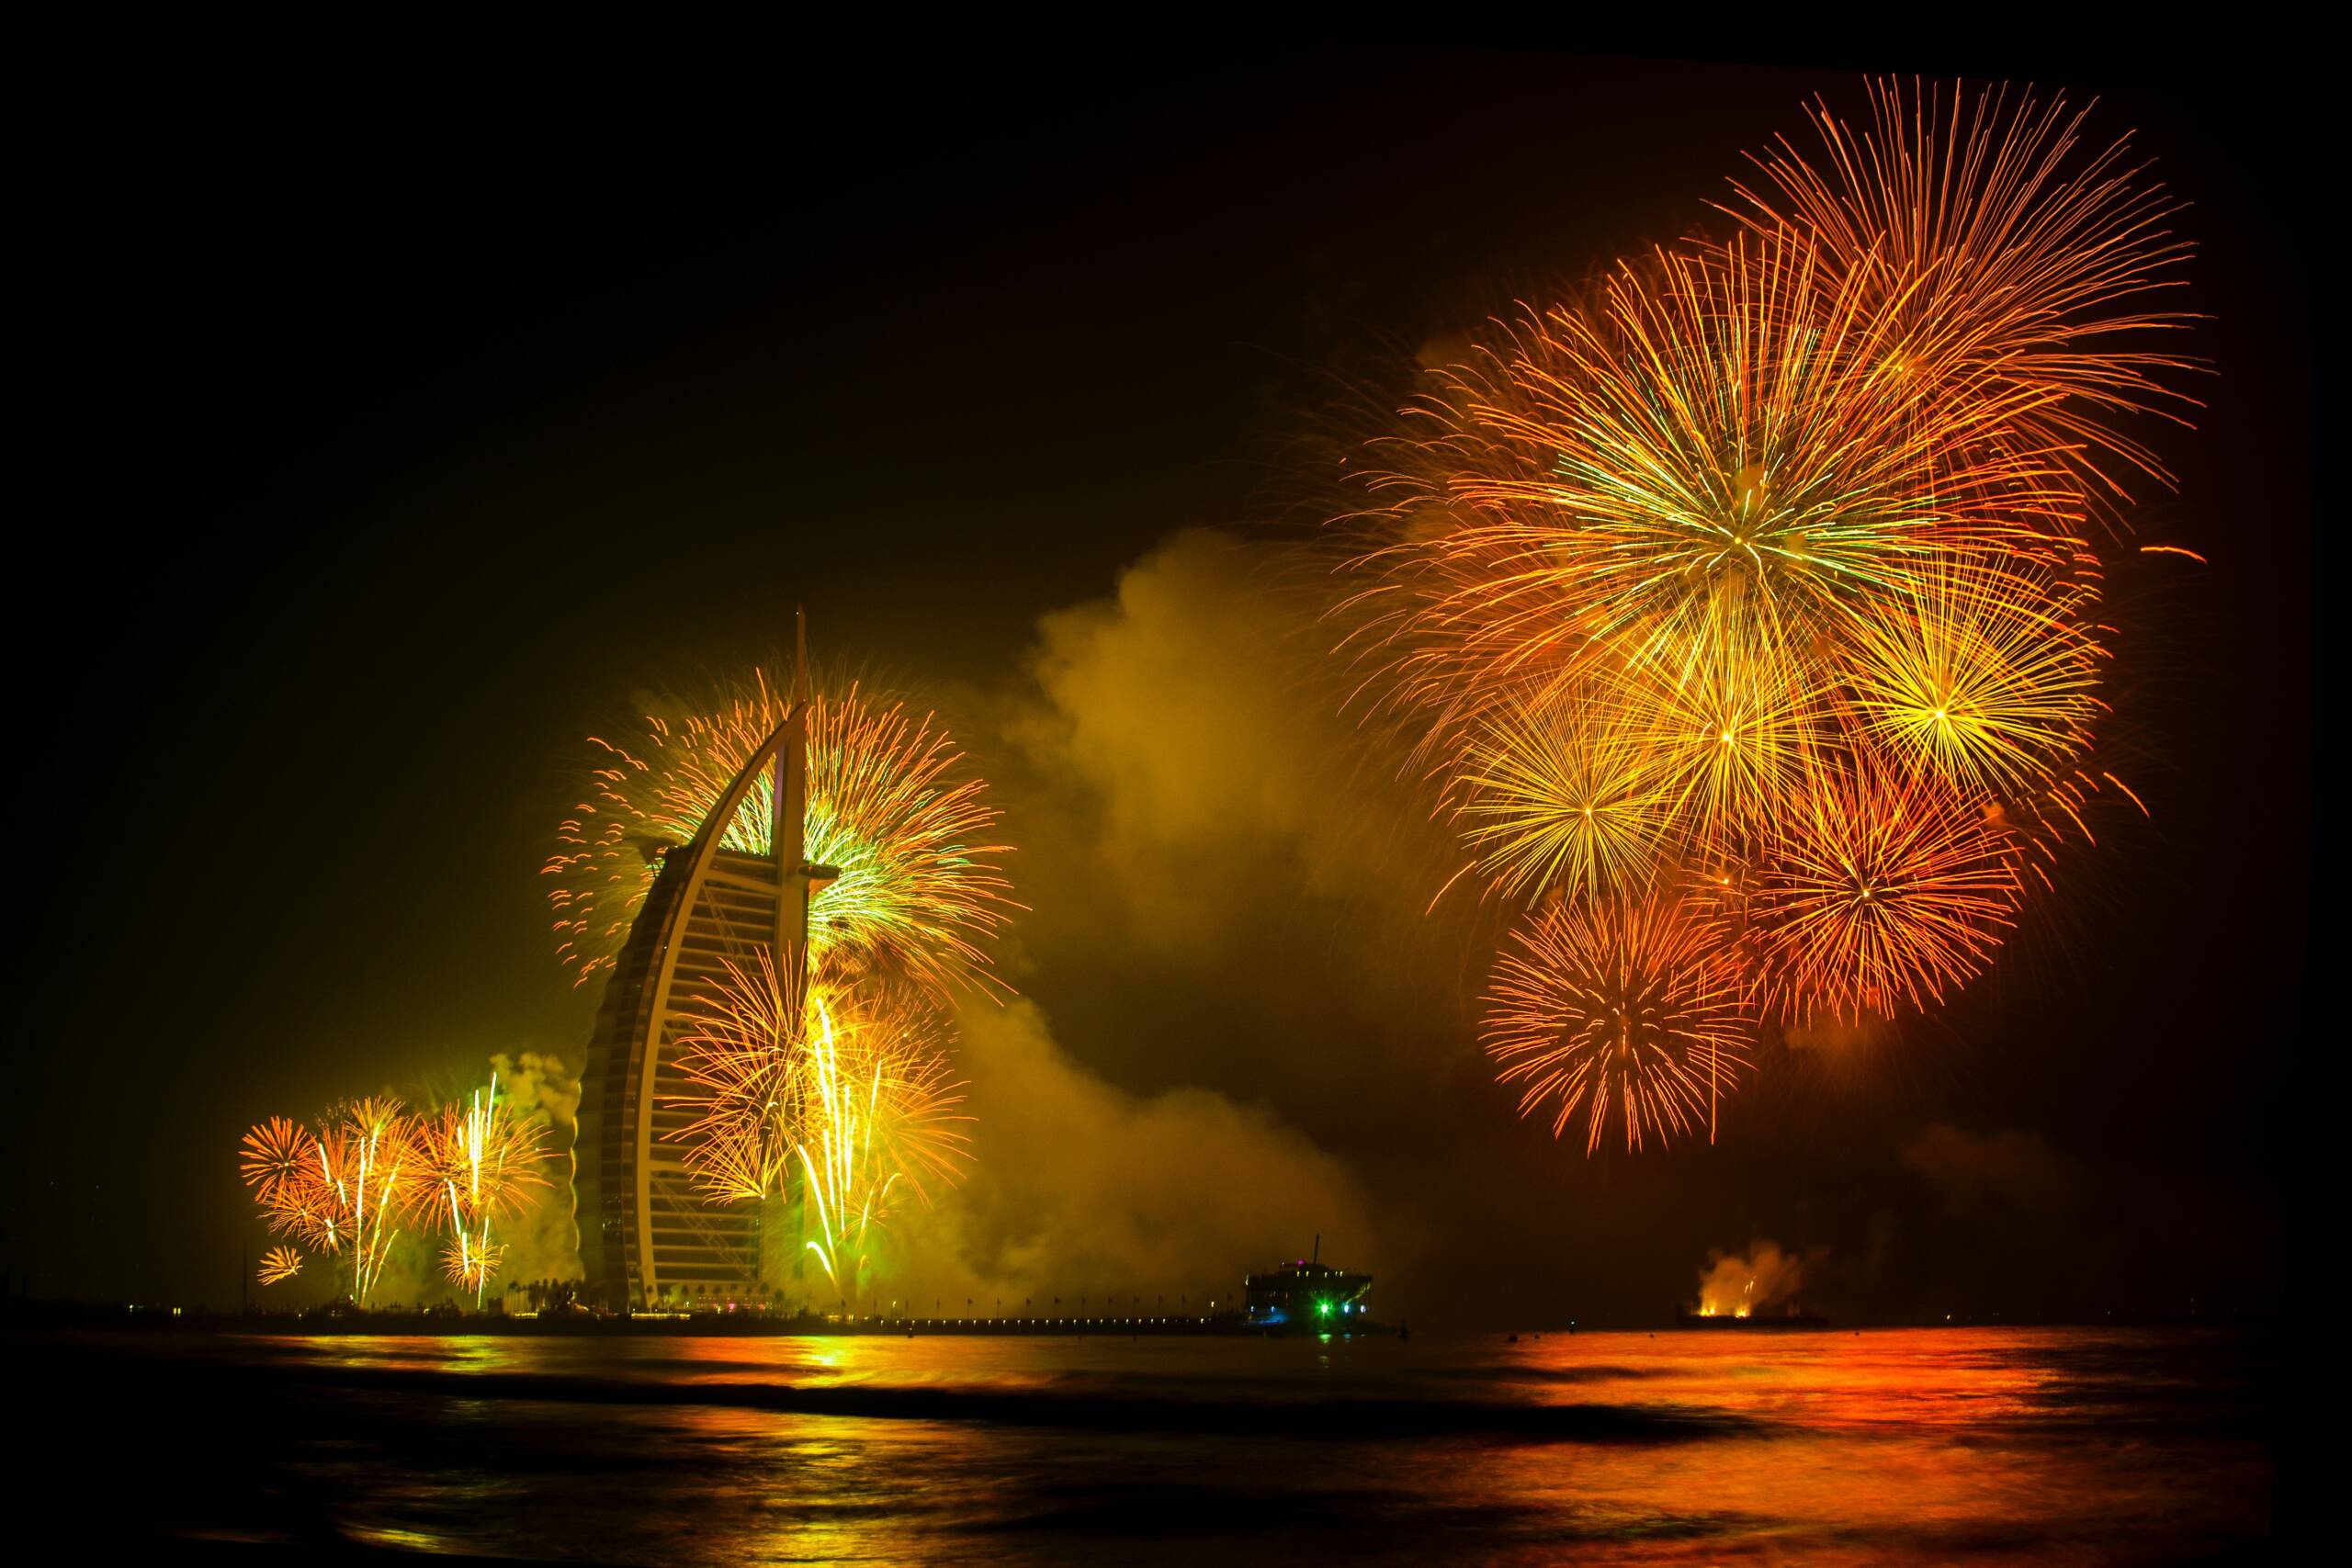 Photo prise lors du nouvel an à Dubai, feux d'artifices oranges et jaune - la photo a été prise le soir